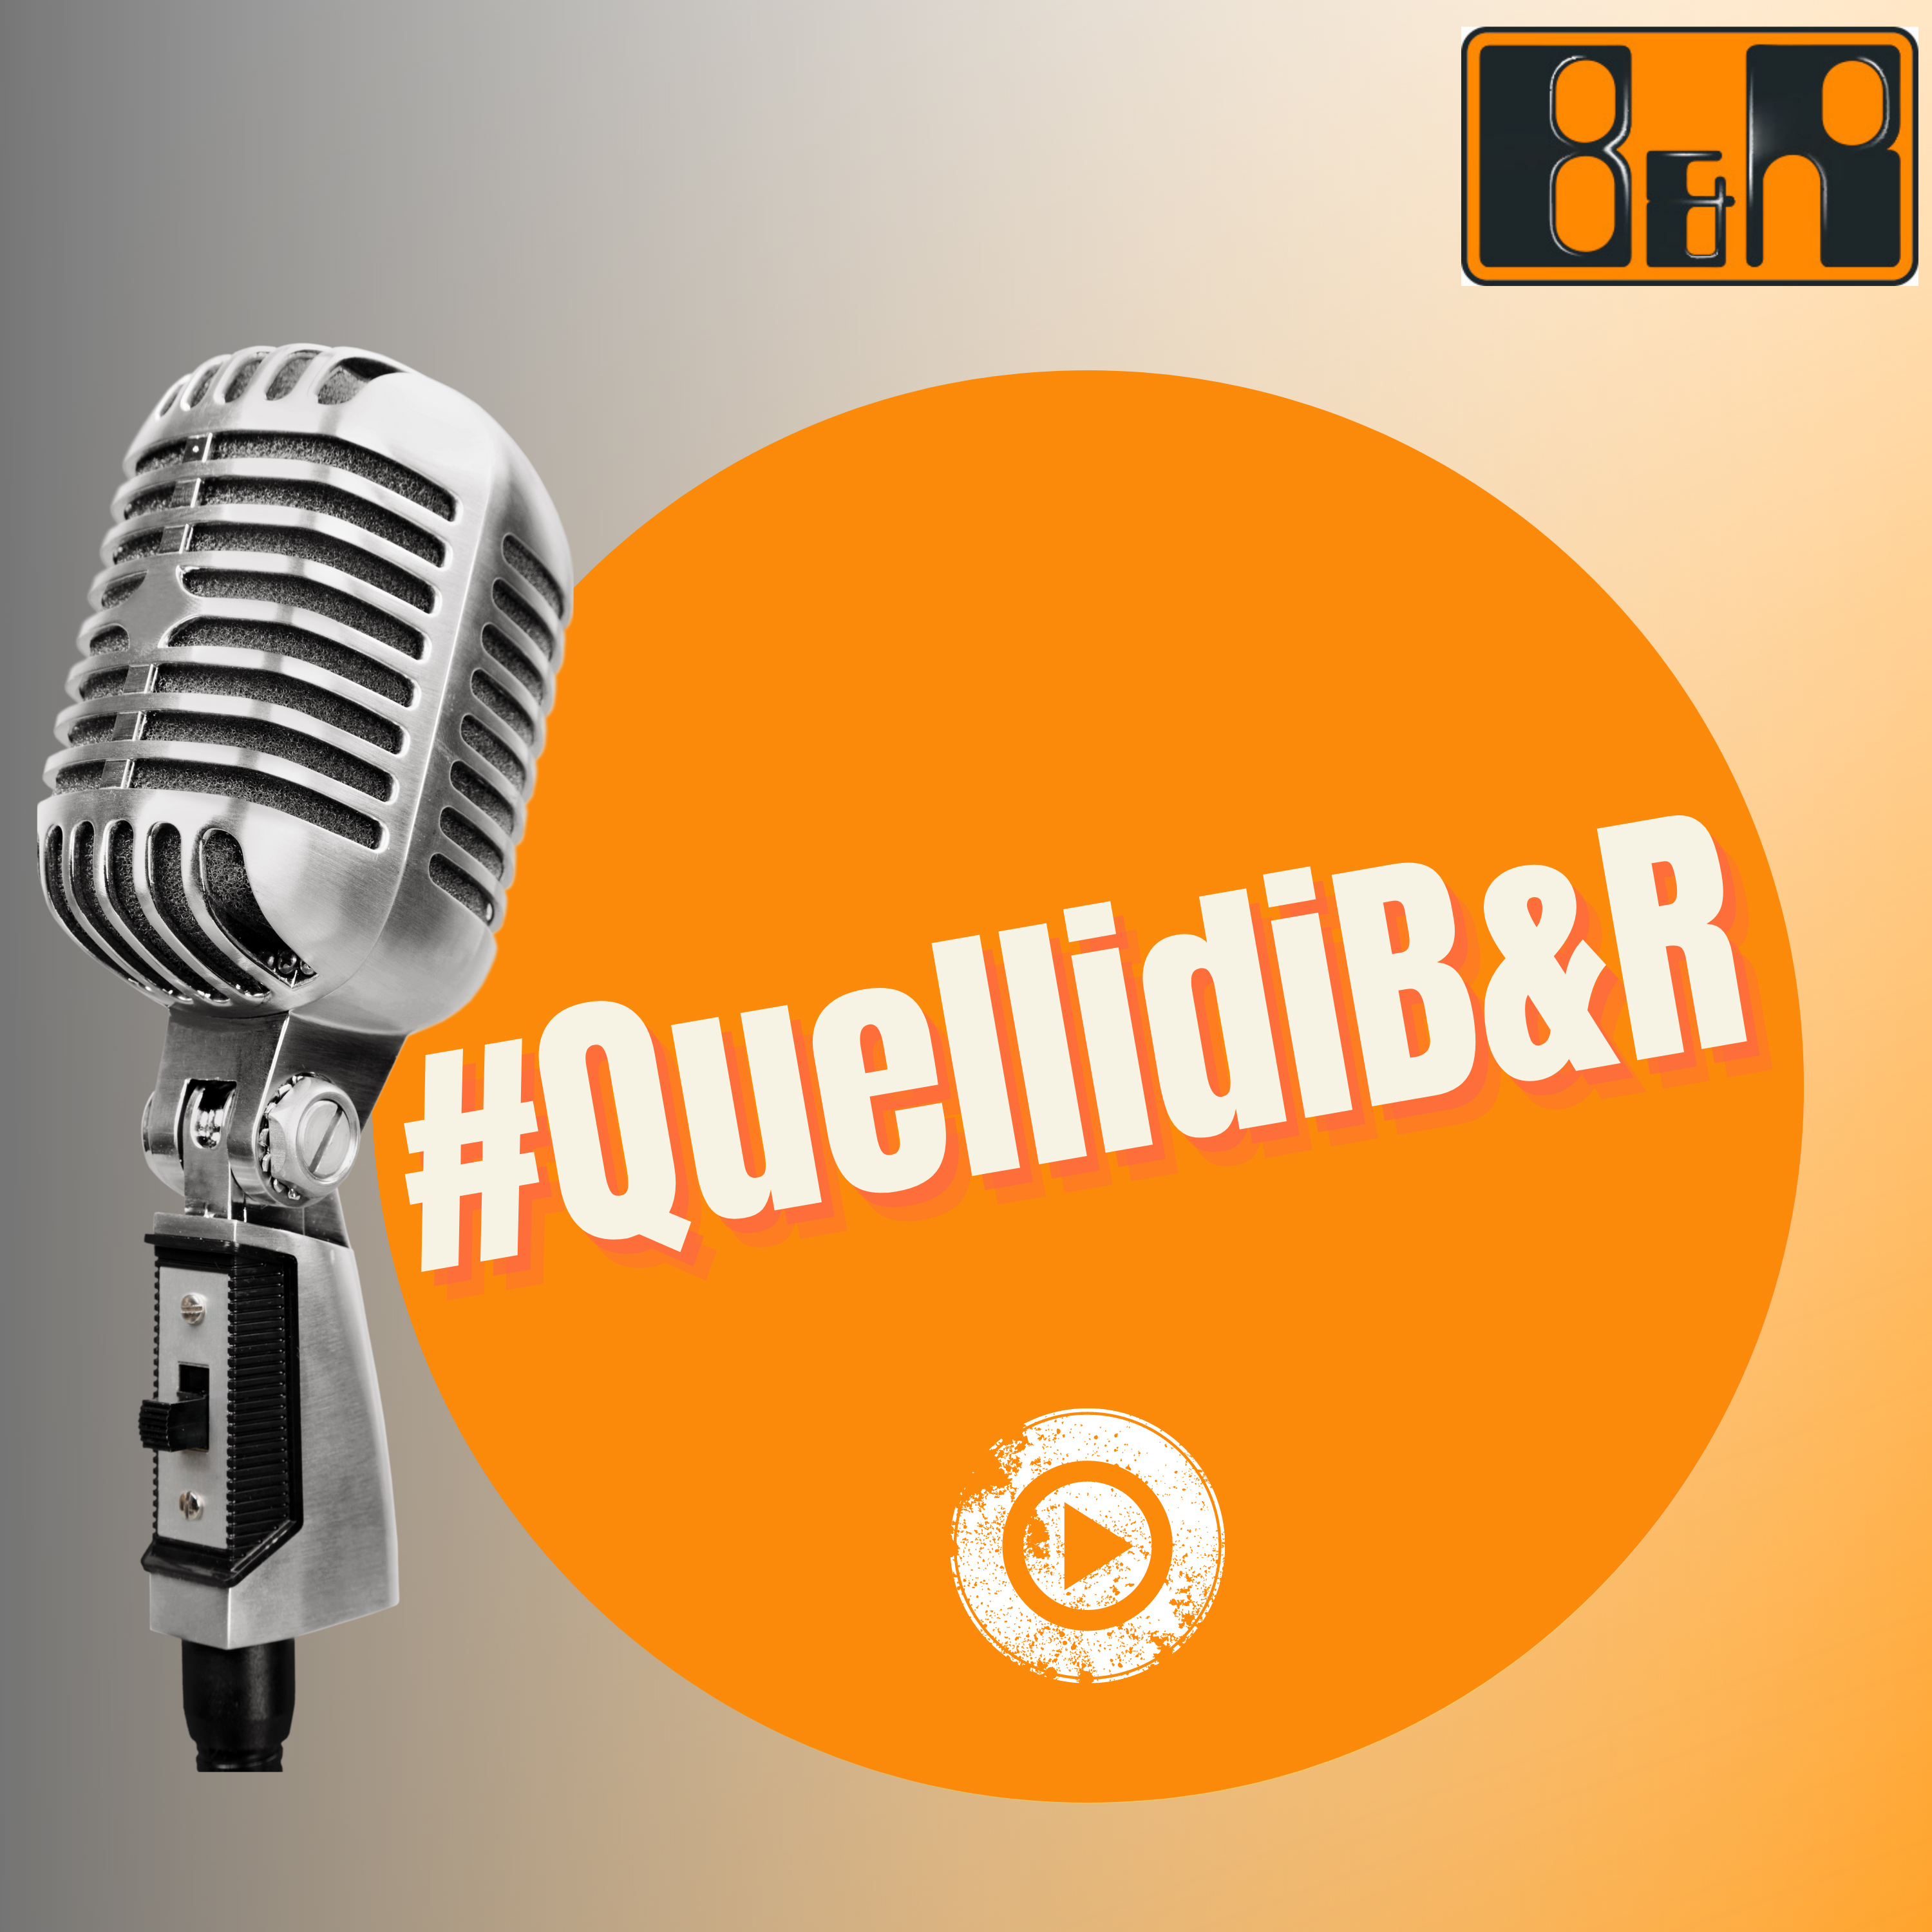 Il progetto podcast #QuellidiB&R mette le persone al centro